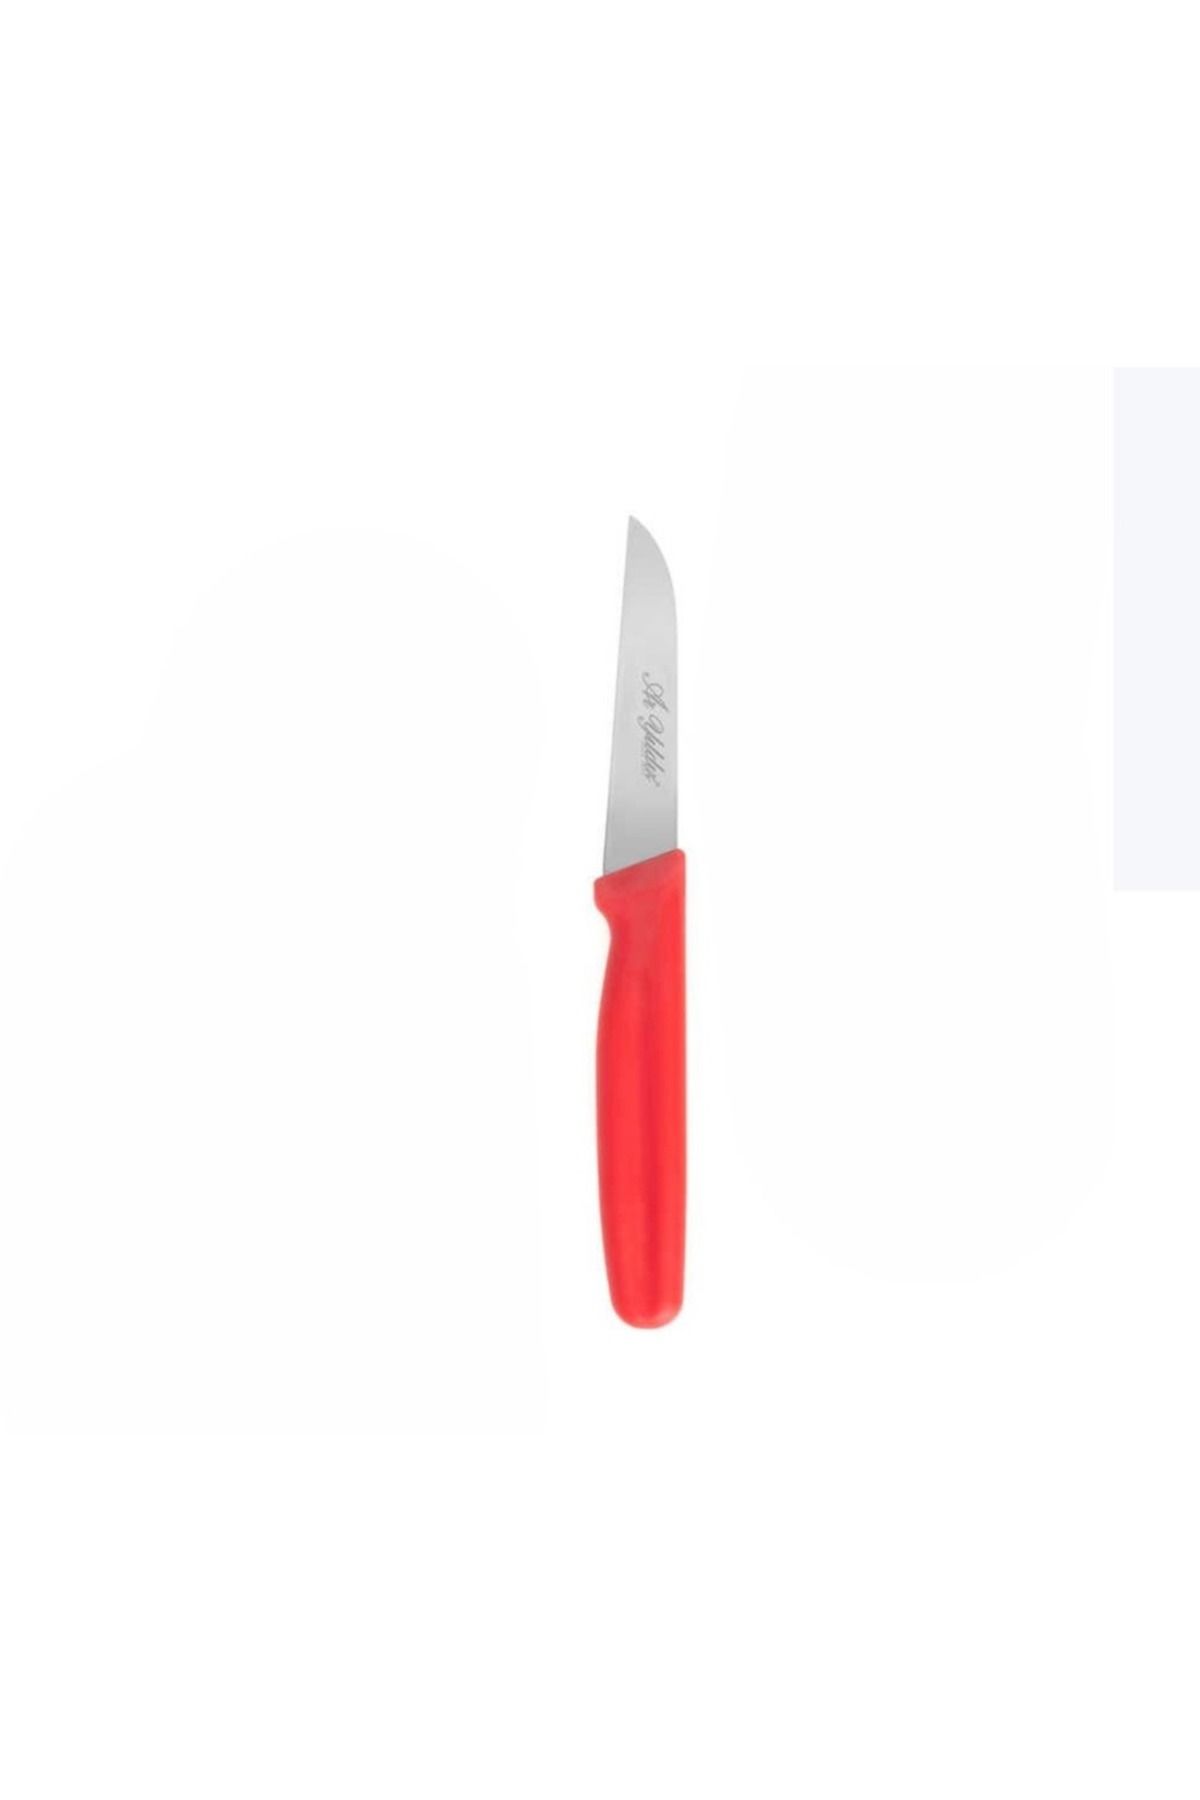 Aryıldız Basic Küt Ağızlı Sebze Meyve Bıçak 8cm Metal 18cm Komple Ölçü Çelik Standart 1 Adet Kırmızı